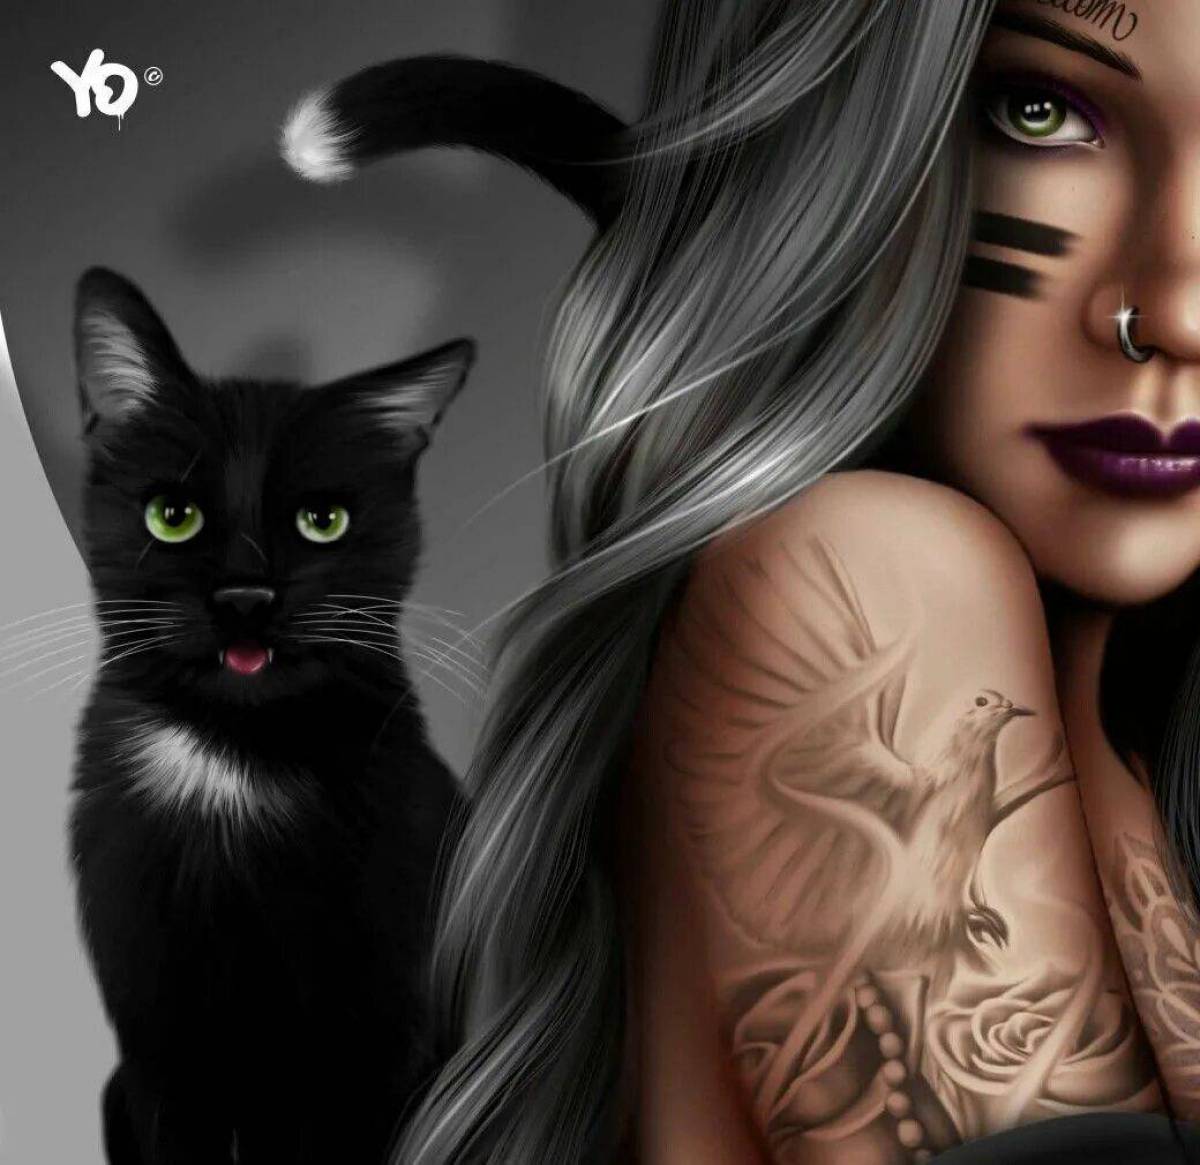 Картинка девушка с кошкой. Девушка кошка. Красивая девушка с кошкой. Девушка с кошкой арт. Девушка с черной кошкой.